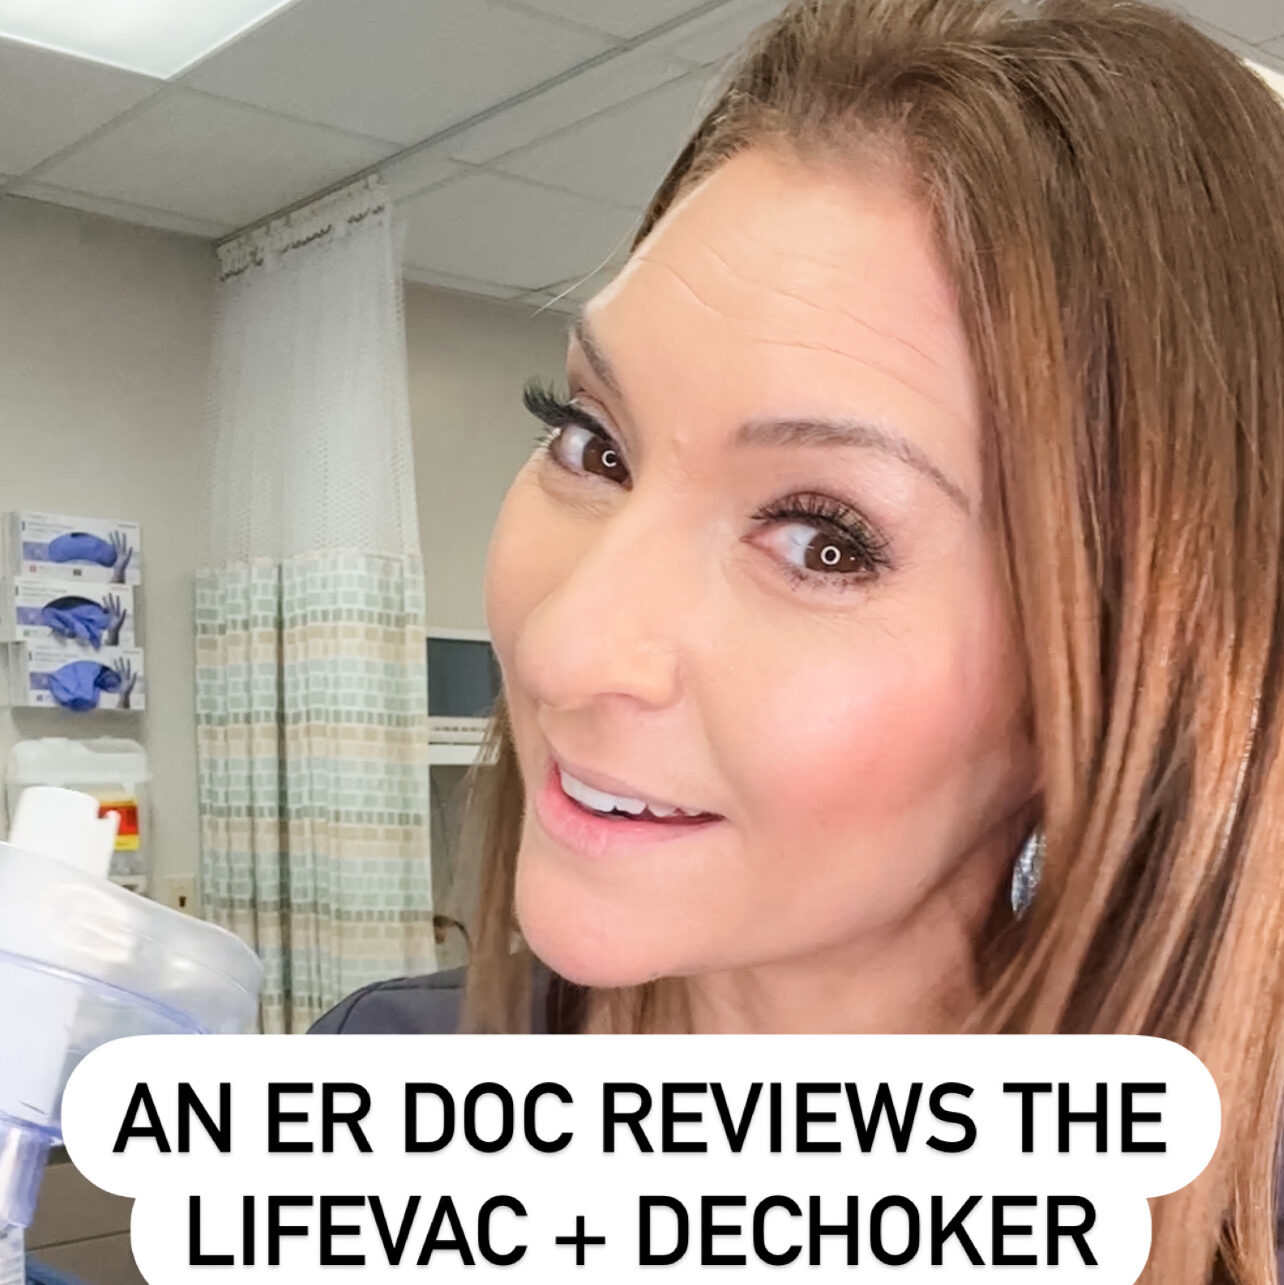 ER doctor reviews Lifevac and dechoker